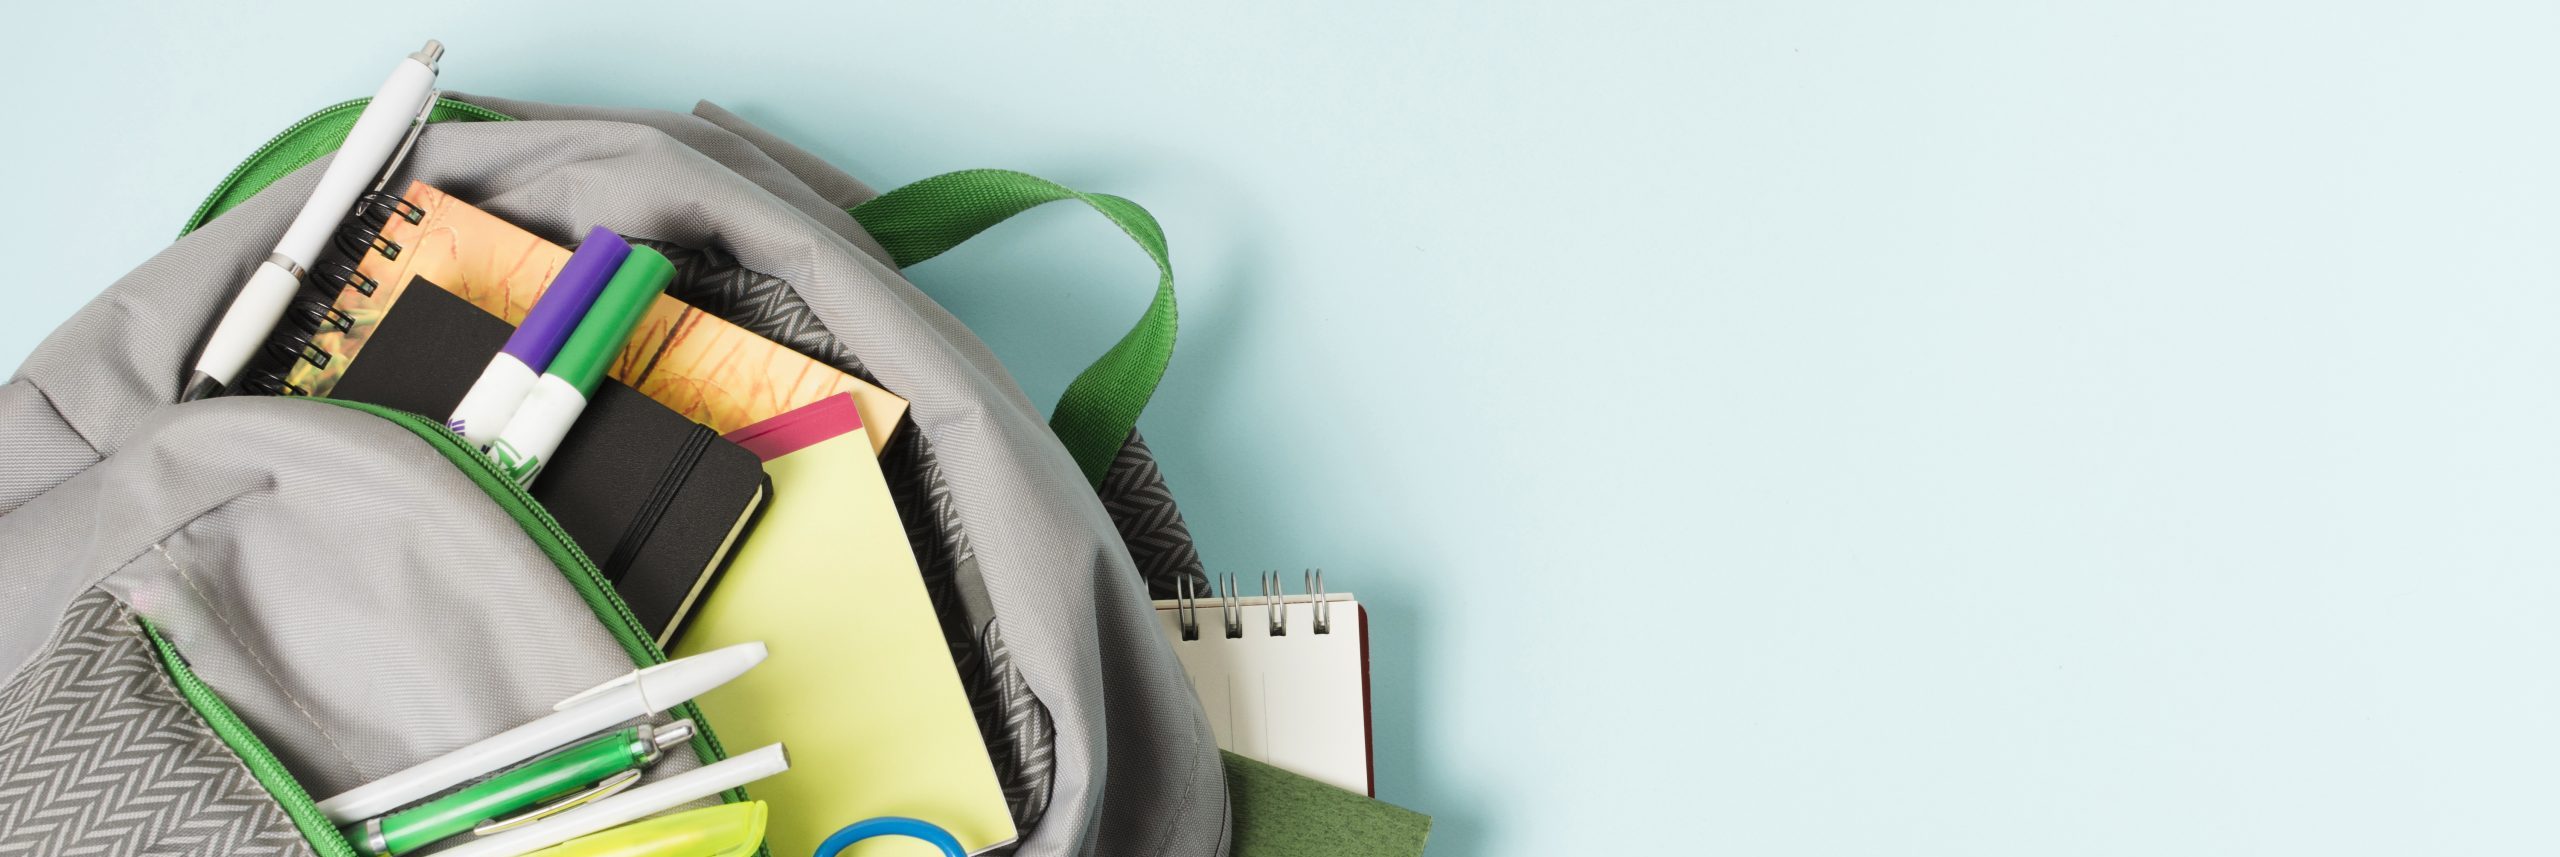 Antes de comenzar la escuela: ¿Qué se debe llevar en la mochila?